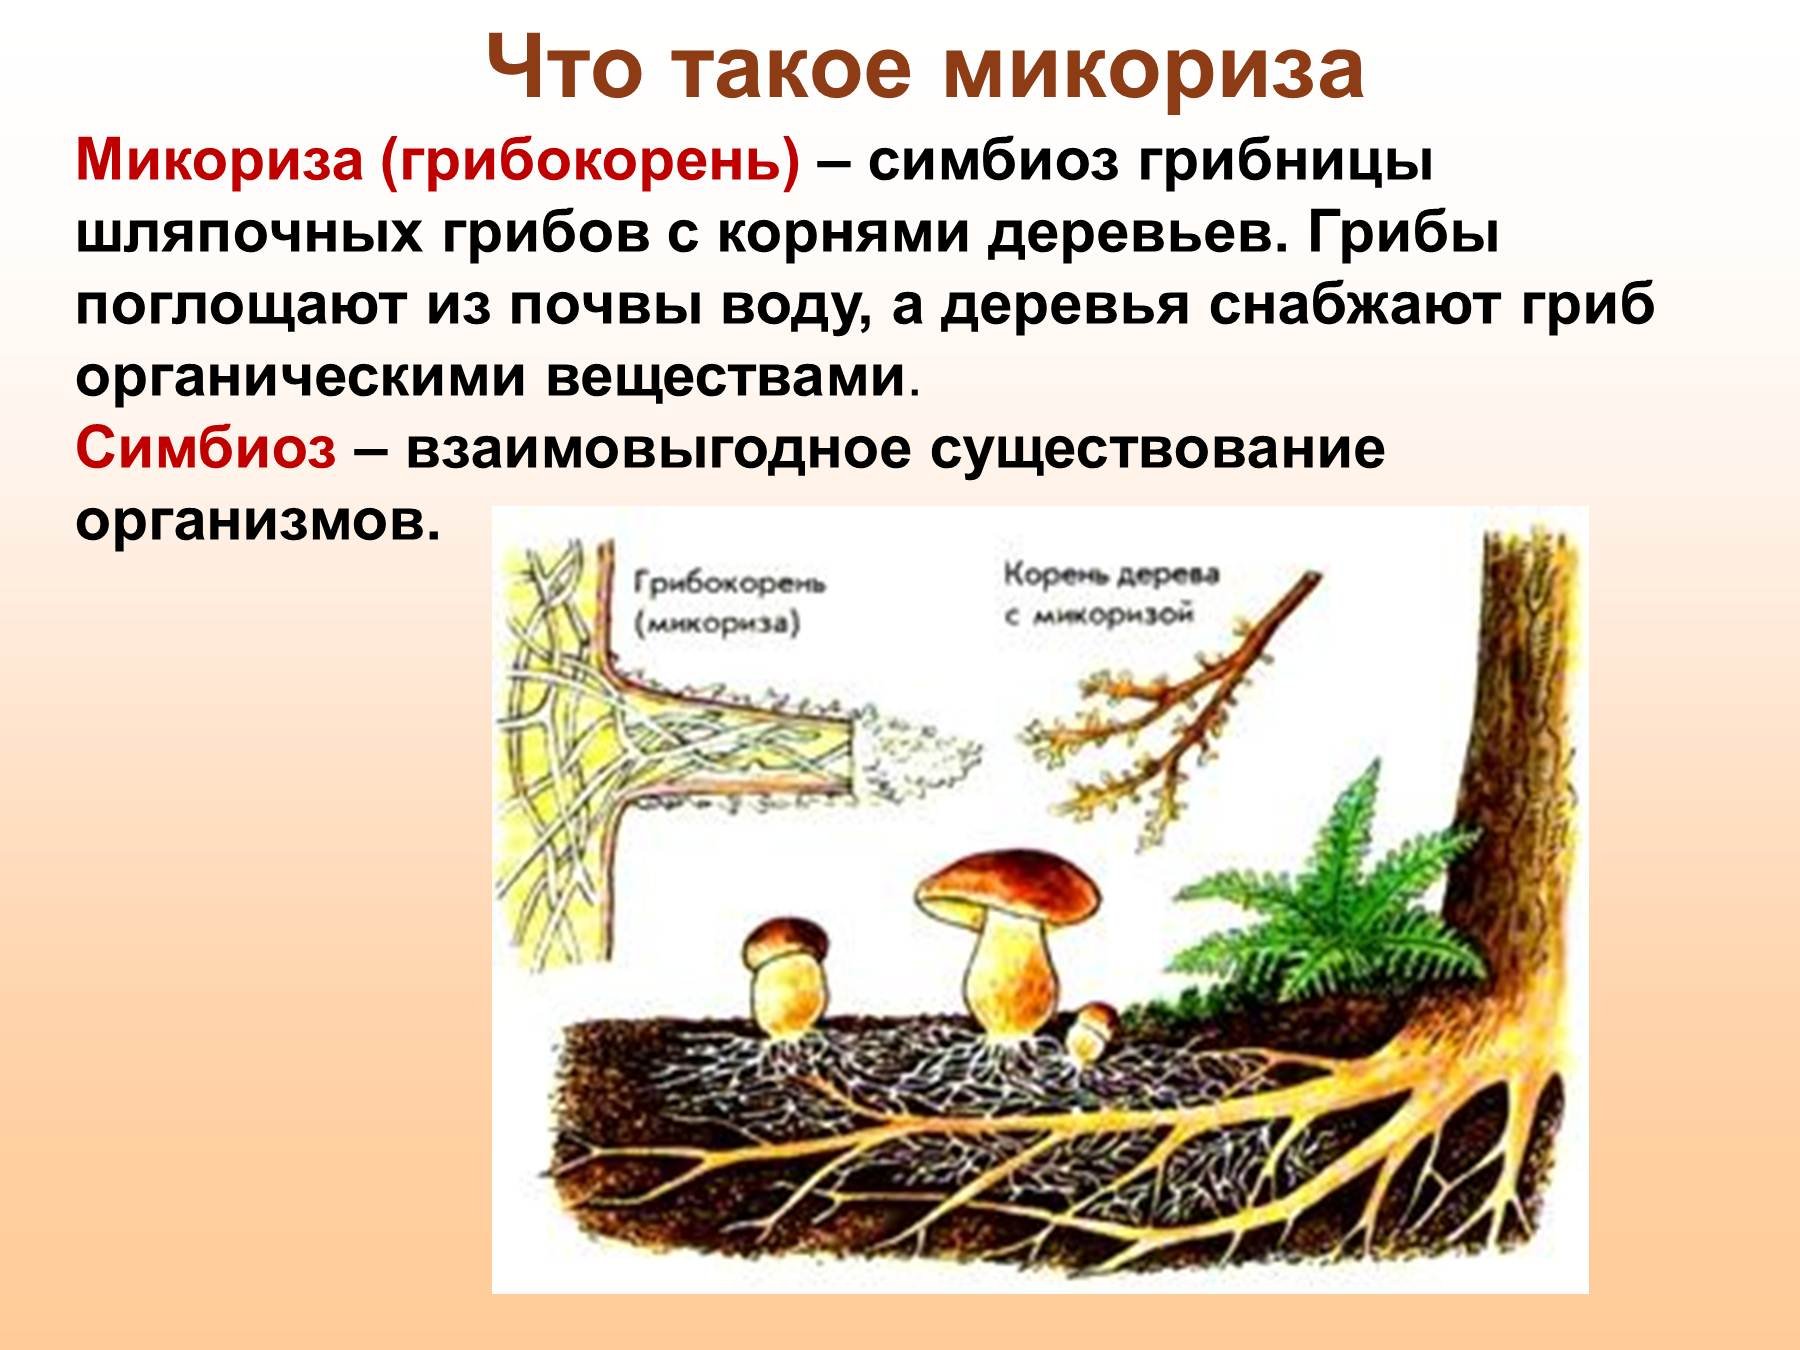 Шляпочный гриб и дерево. Шляпочные грибы микориза. Микориза у шляпочных грибов. Трутовик микориза. Что такое микориза у грибов.